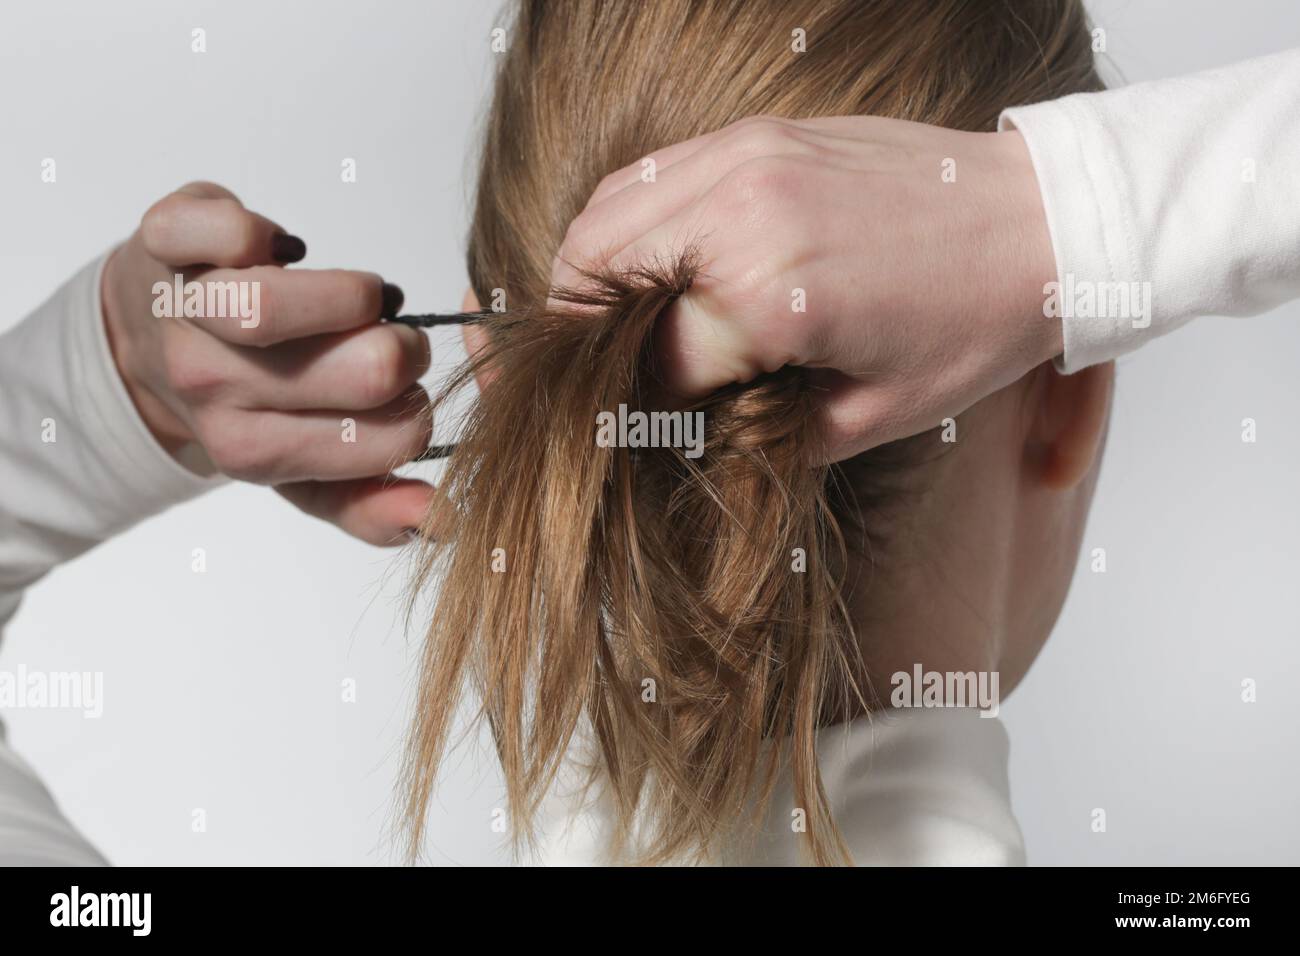 Série de photos de faire une queue de cheval basse avec élastique de base  bande de cheveux. Vue arrière de la jeune femme a attaché ses cheveux dans  la queue de cheval